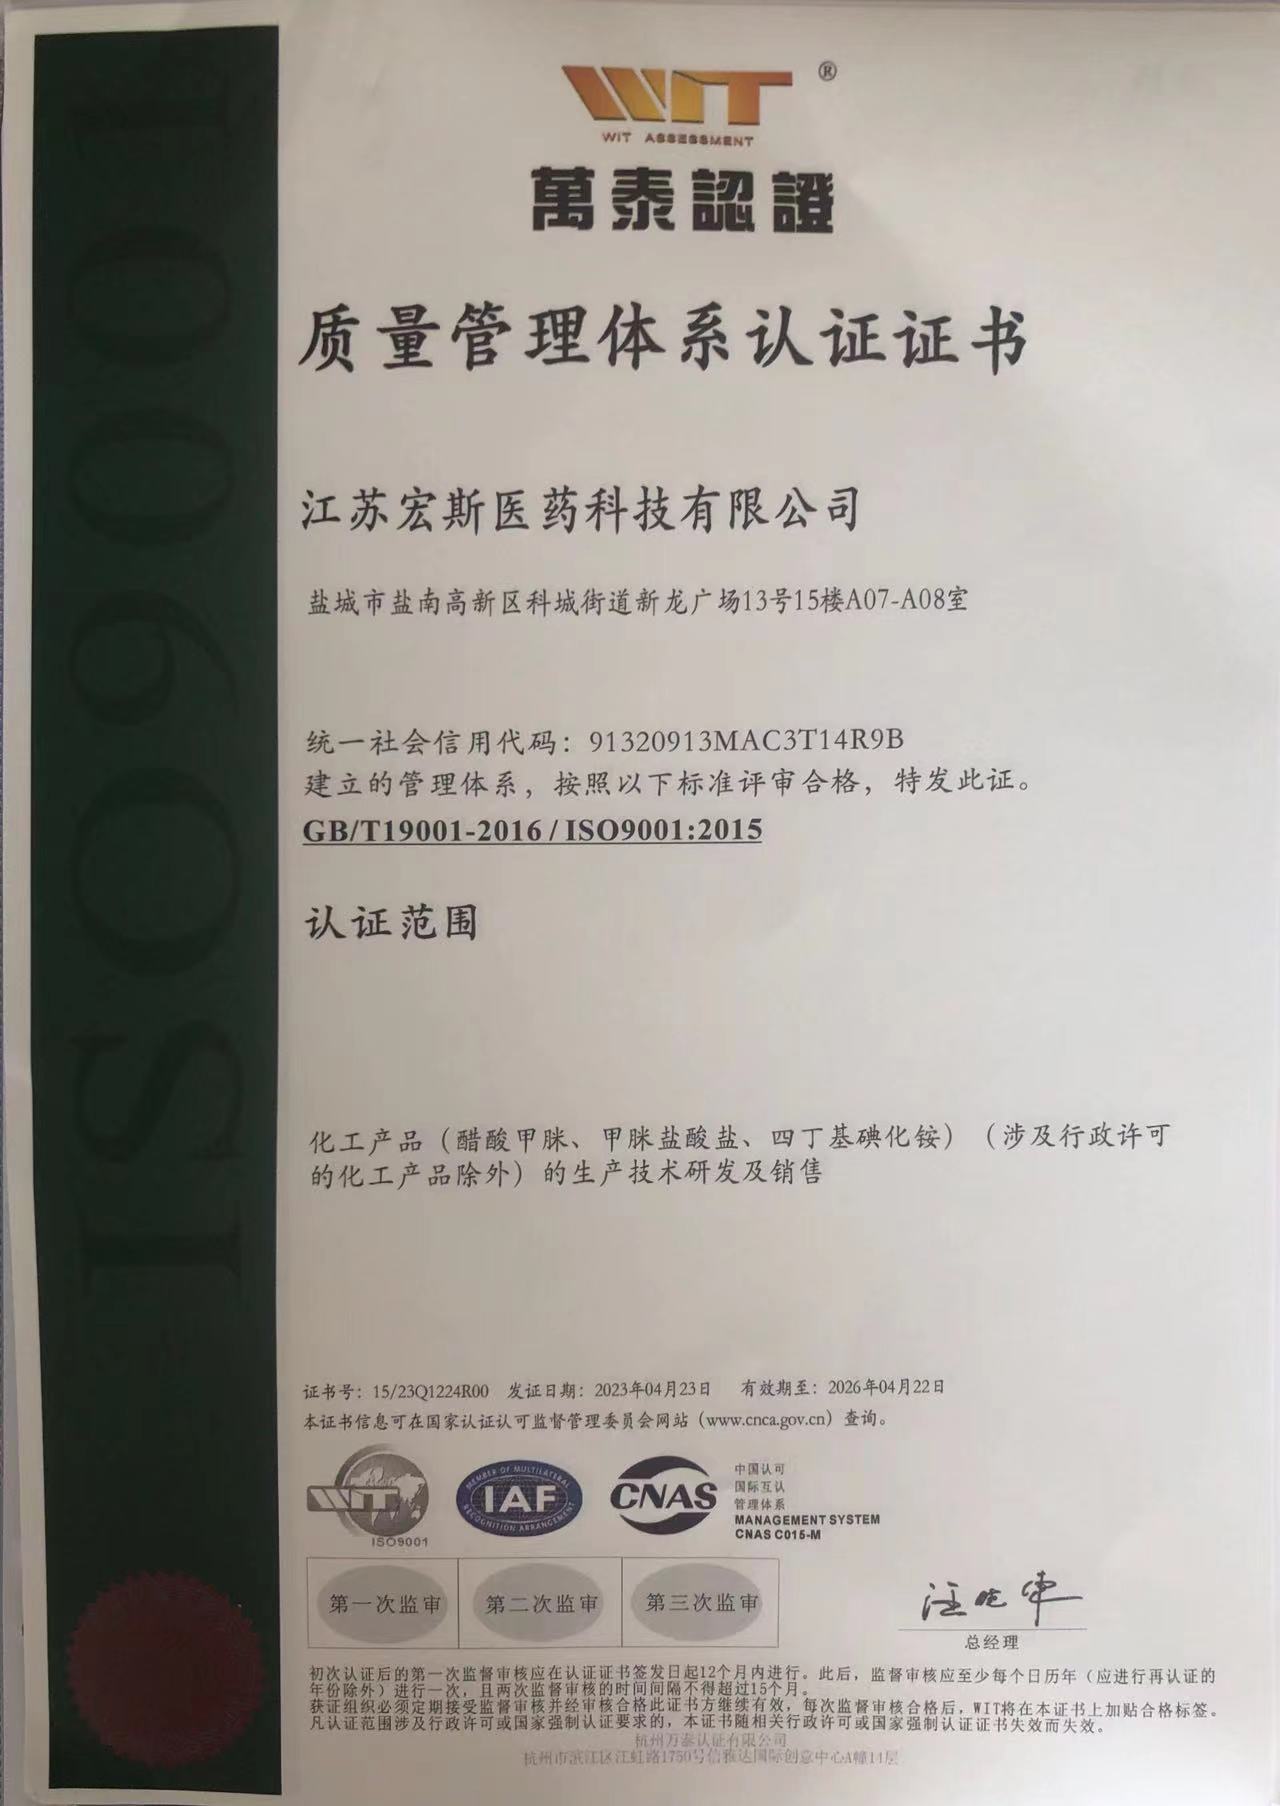 Γιορτάστε θερμά την Jiangsu Hongsi Medical Technology Co., Ltd. πέρασε με επιτυχία τη διεθνή πιστοποίηση συστήματος ποιότητας ISO9001:2015